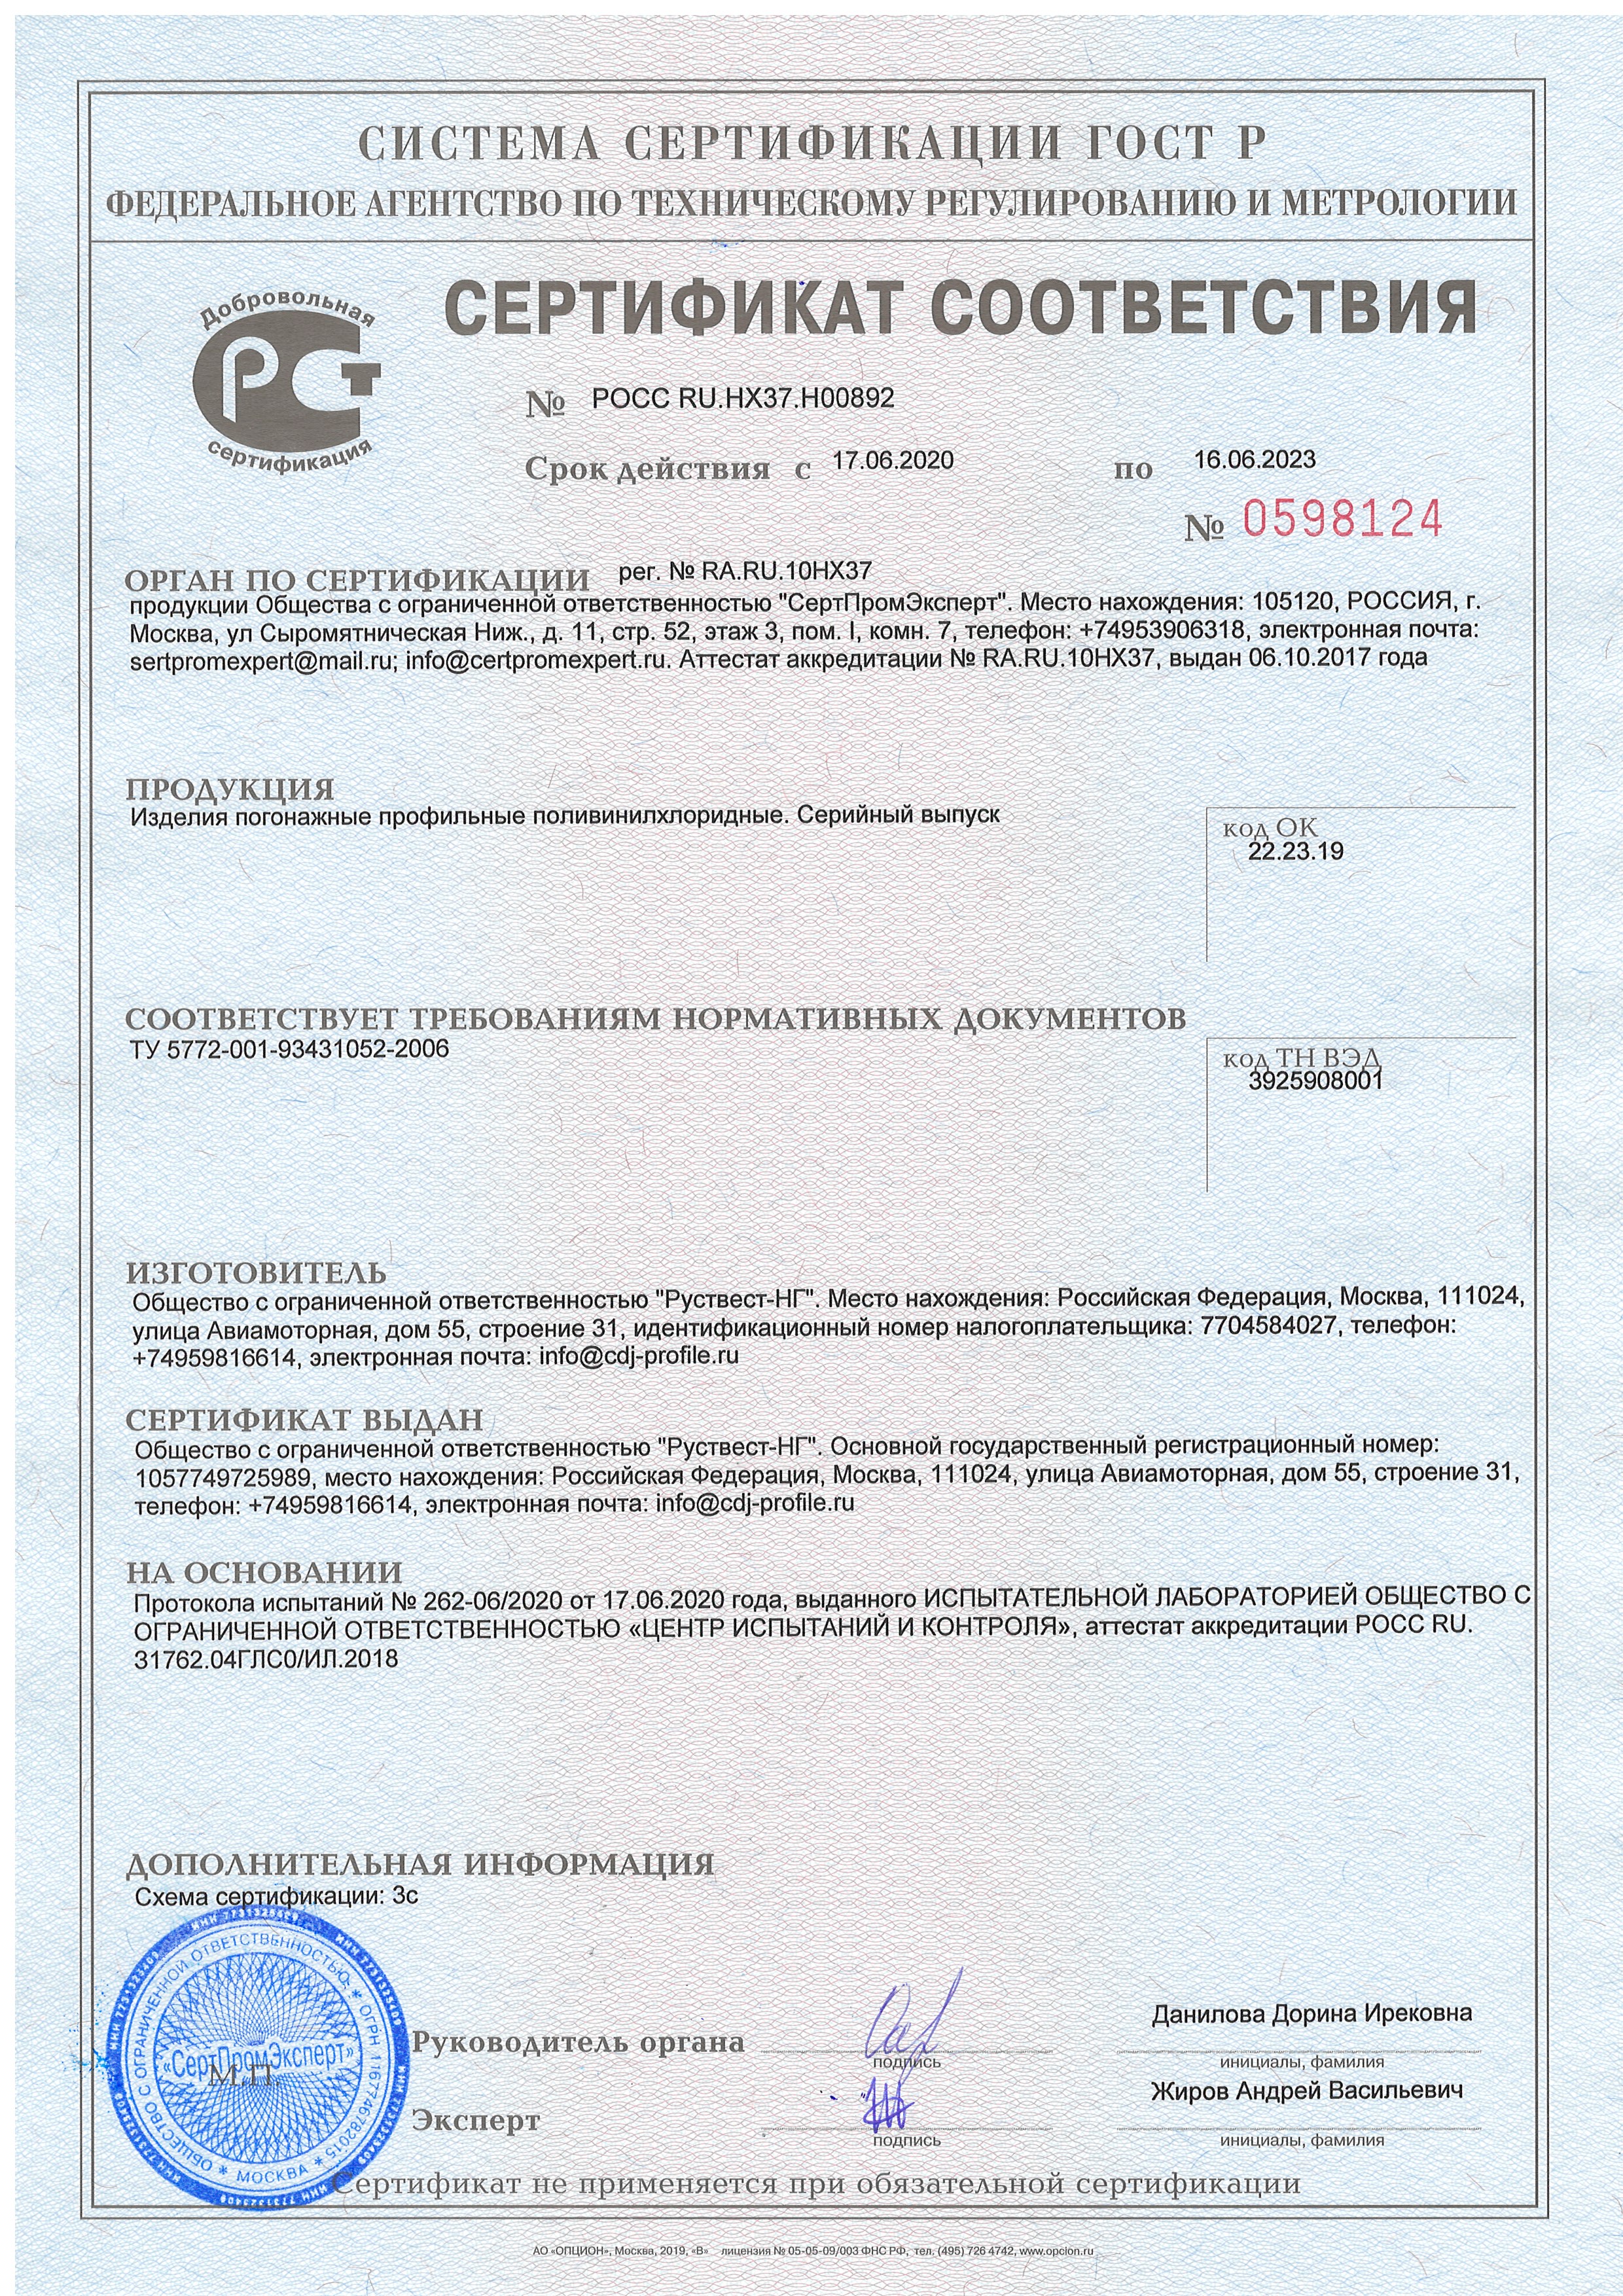 Изделия погонажные профильные полихлорвиниловые Руствест-НГ 16.06.2023